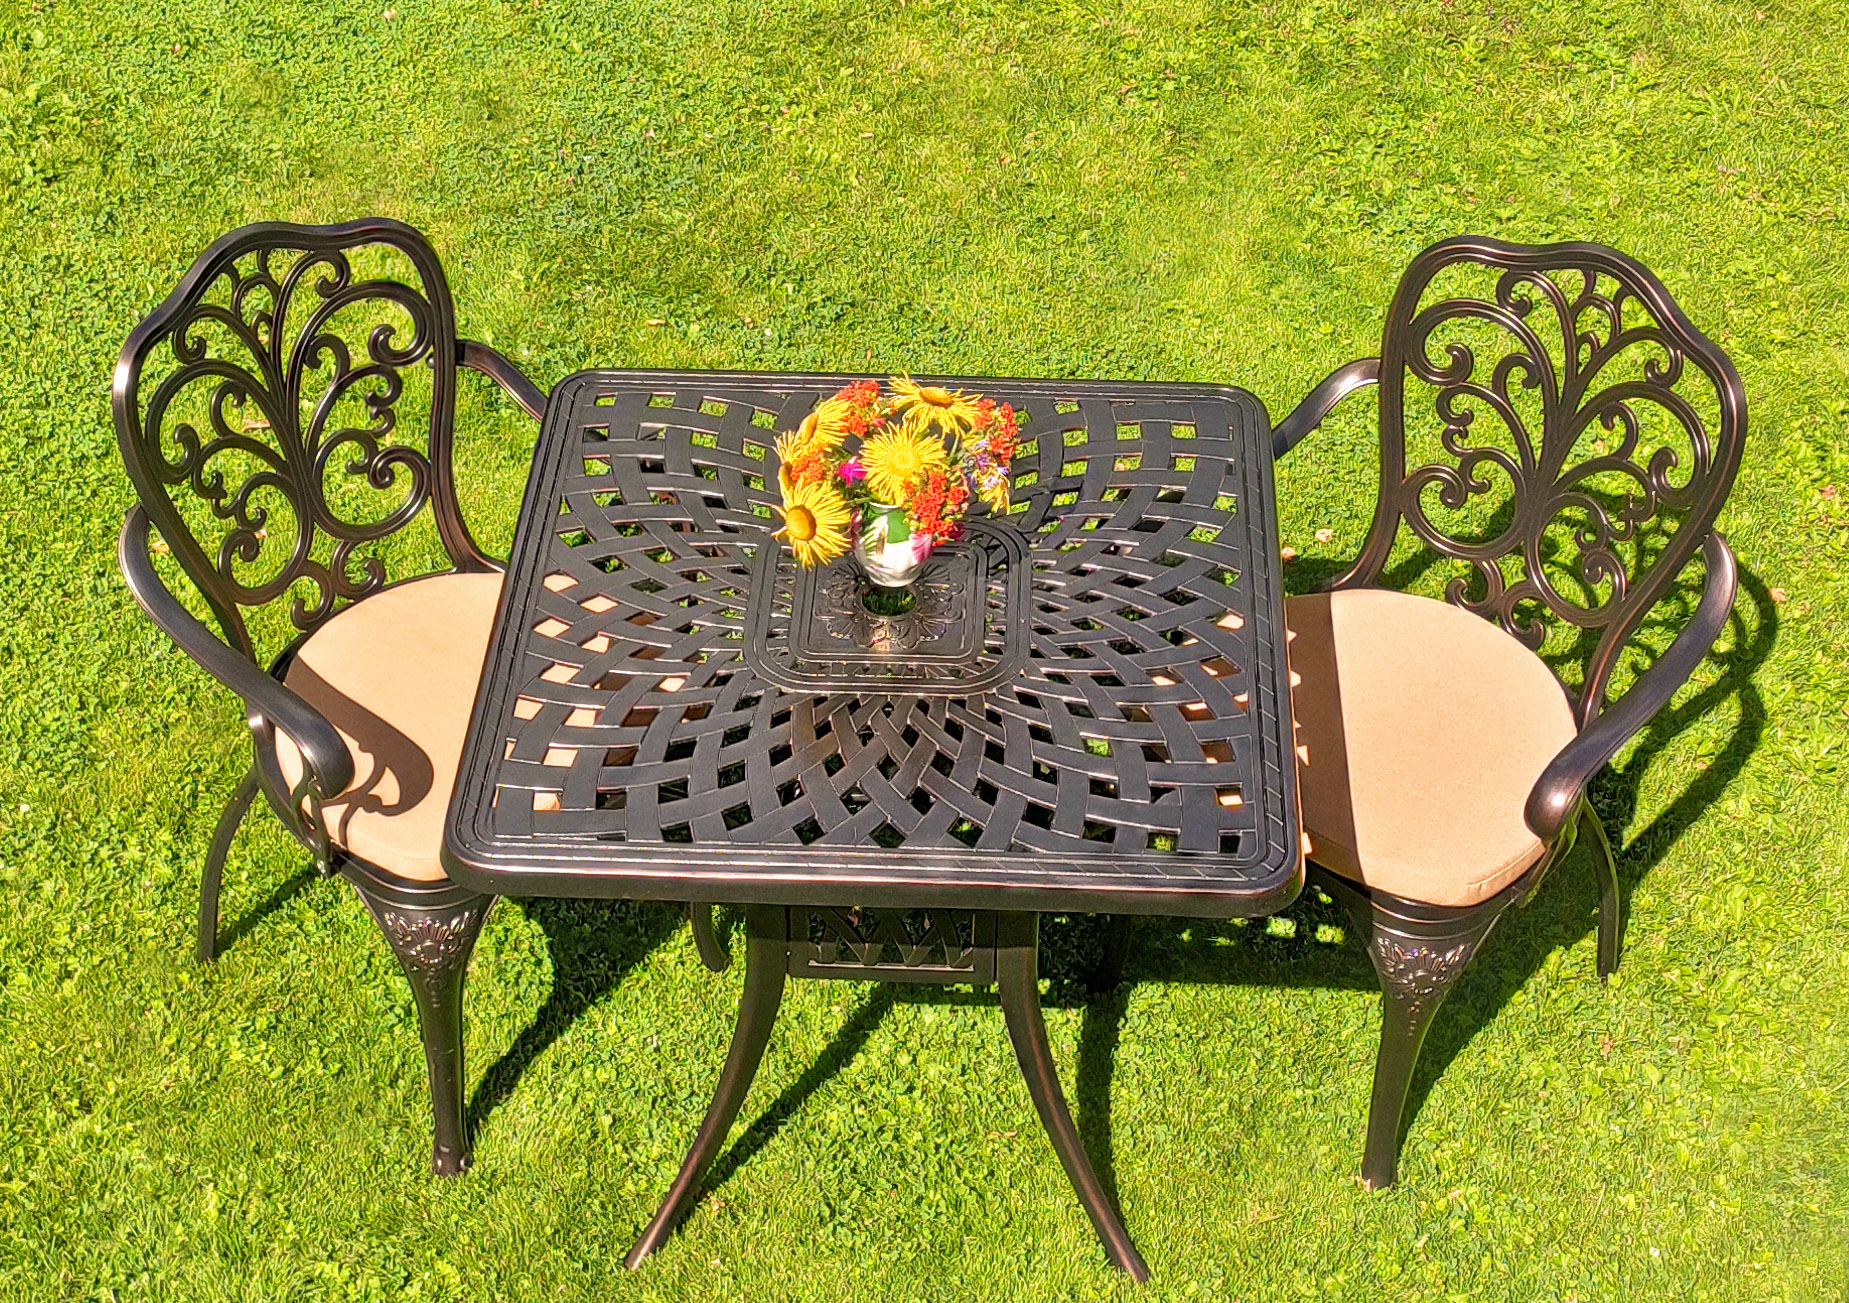 Мебель для сада и дачи из металла, кованые кресла и стол в сад, чугунные столы и стулья, мебель для летних веранд кафе, чайный комплект мебели патио в беседку, кружевной стол для сада с ажурными креслами